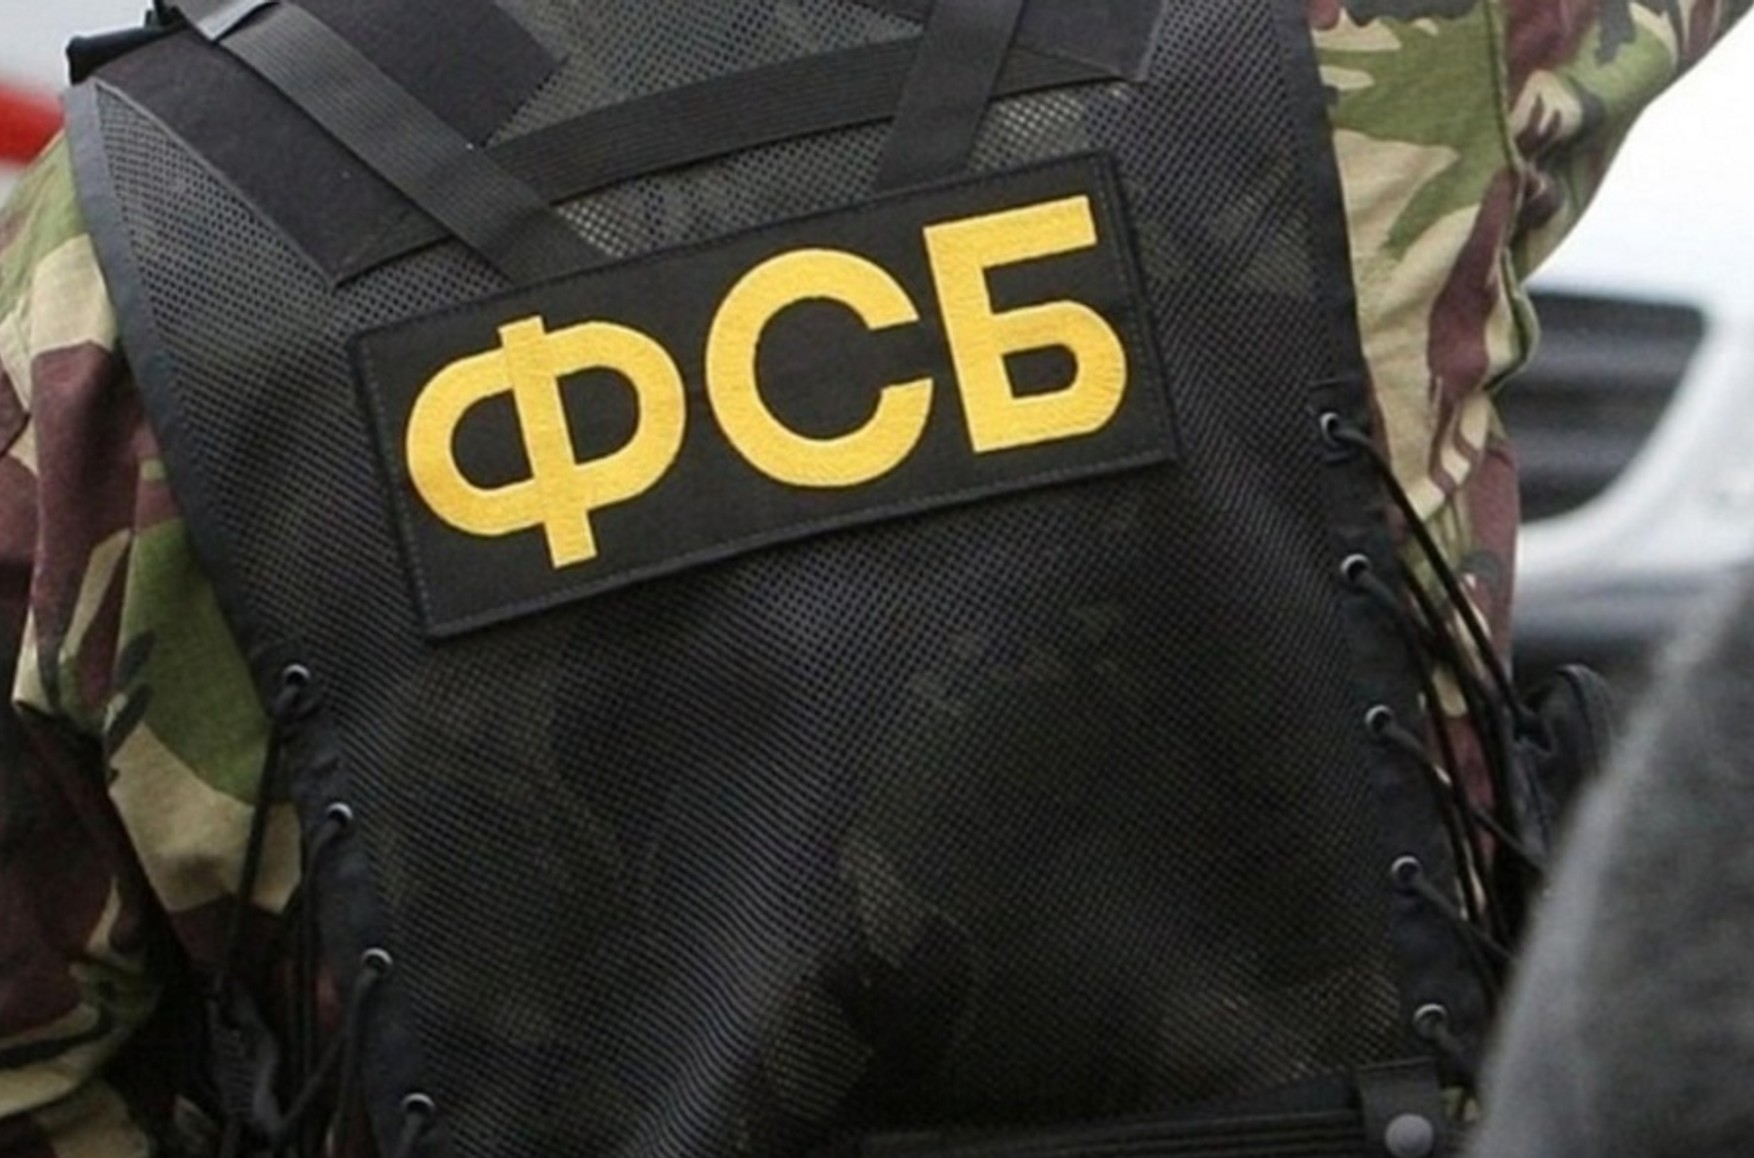 ФСБ заявила о задержании россиянина, который якобы собирался вступить в ВСУ